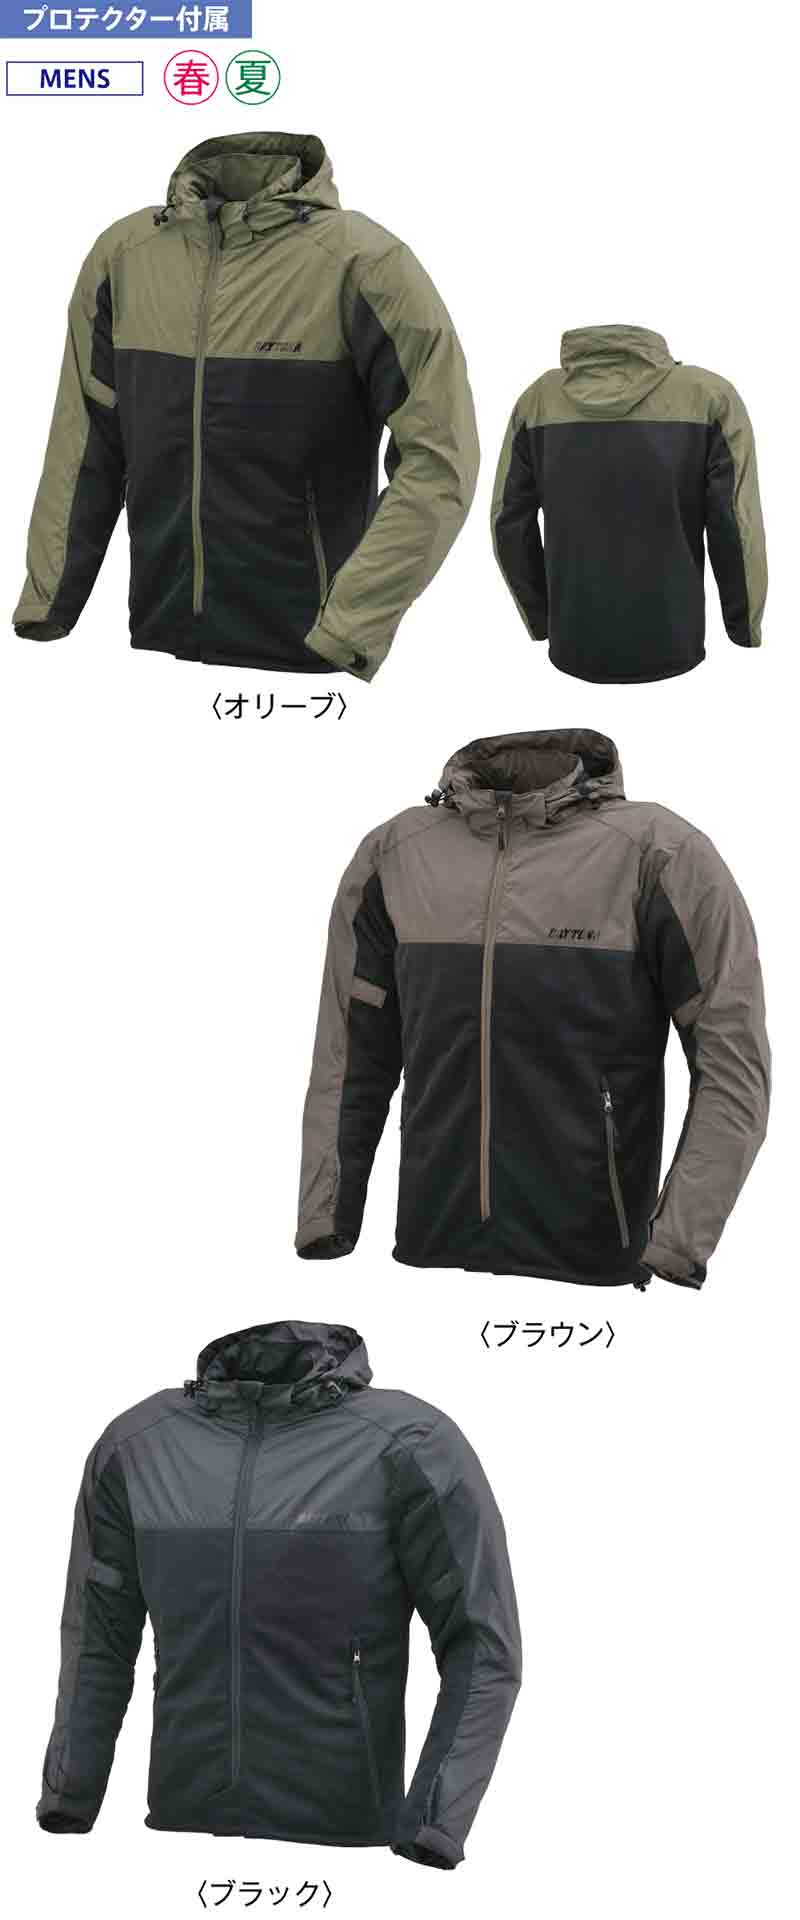 マウンテンパーカースタイルのメッシュジャケット「DJ-001 フィールドメッシュジャケット」がデイトナから発売！ 記事1